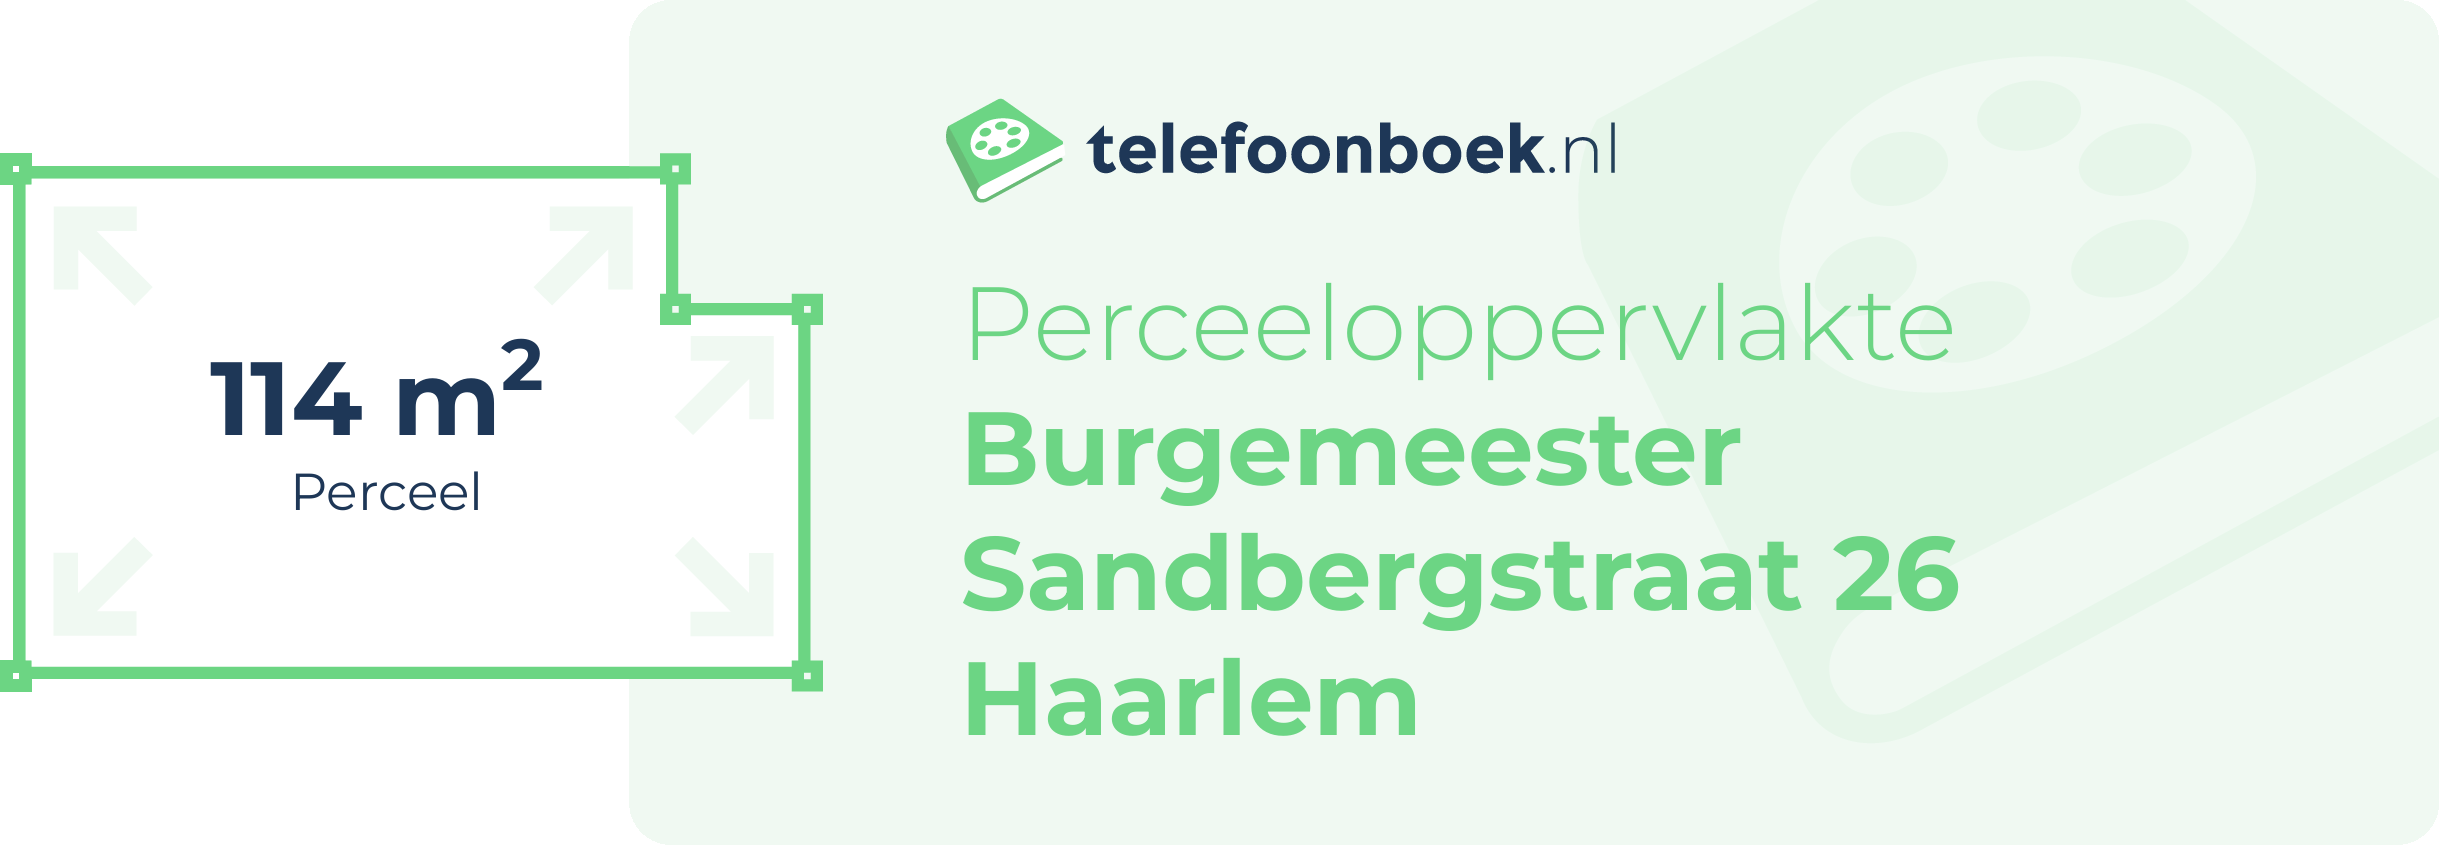 Perceeloppervlakte Burgemeester Sandbergstraat 26 Haarlem